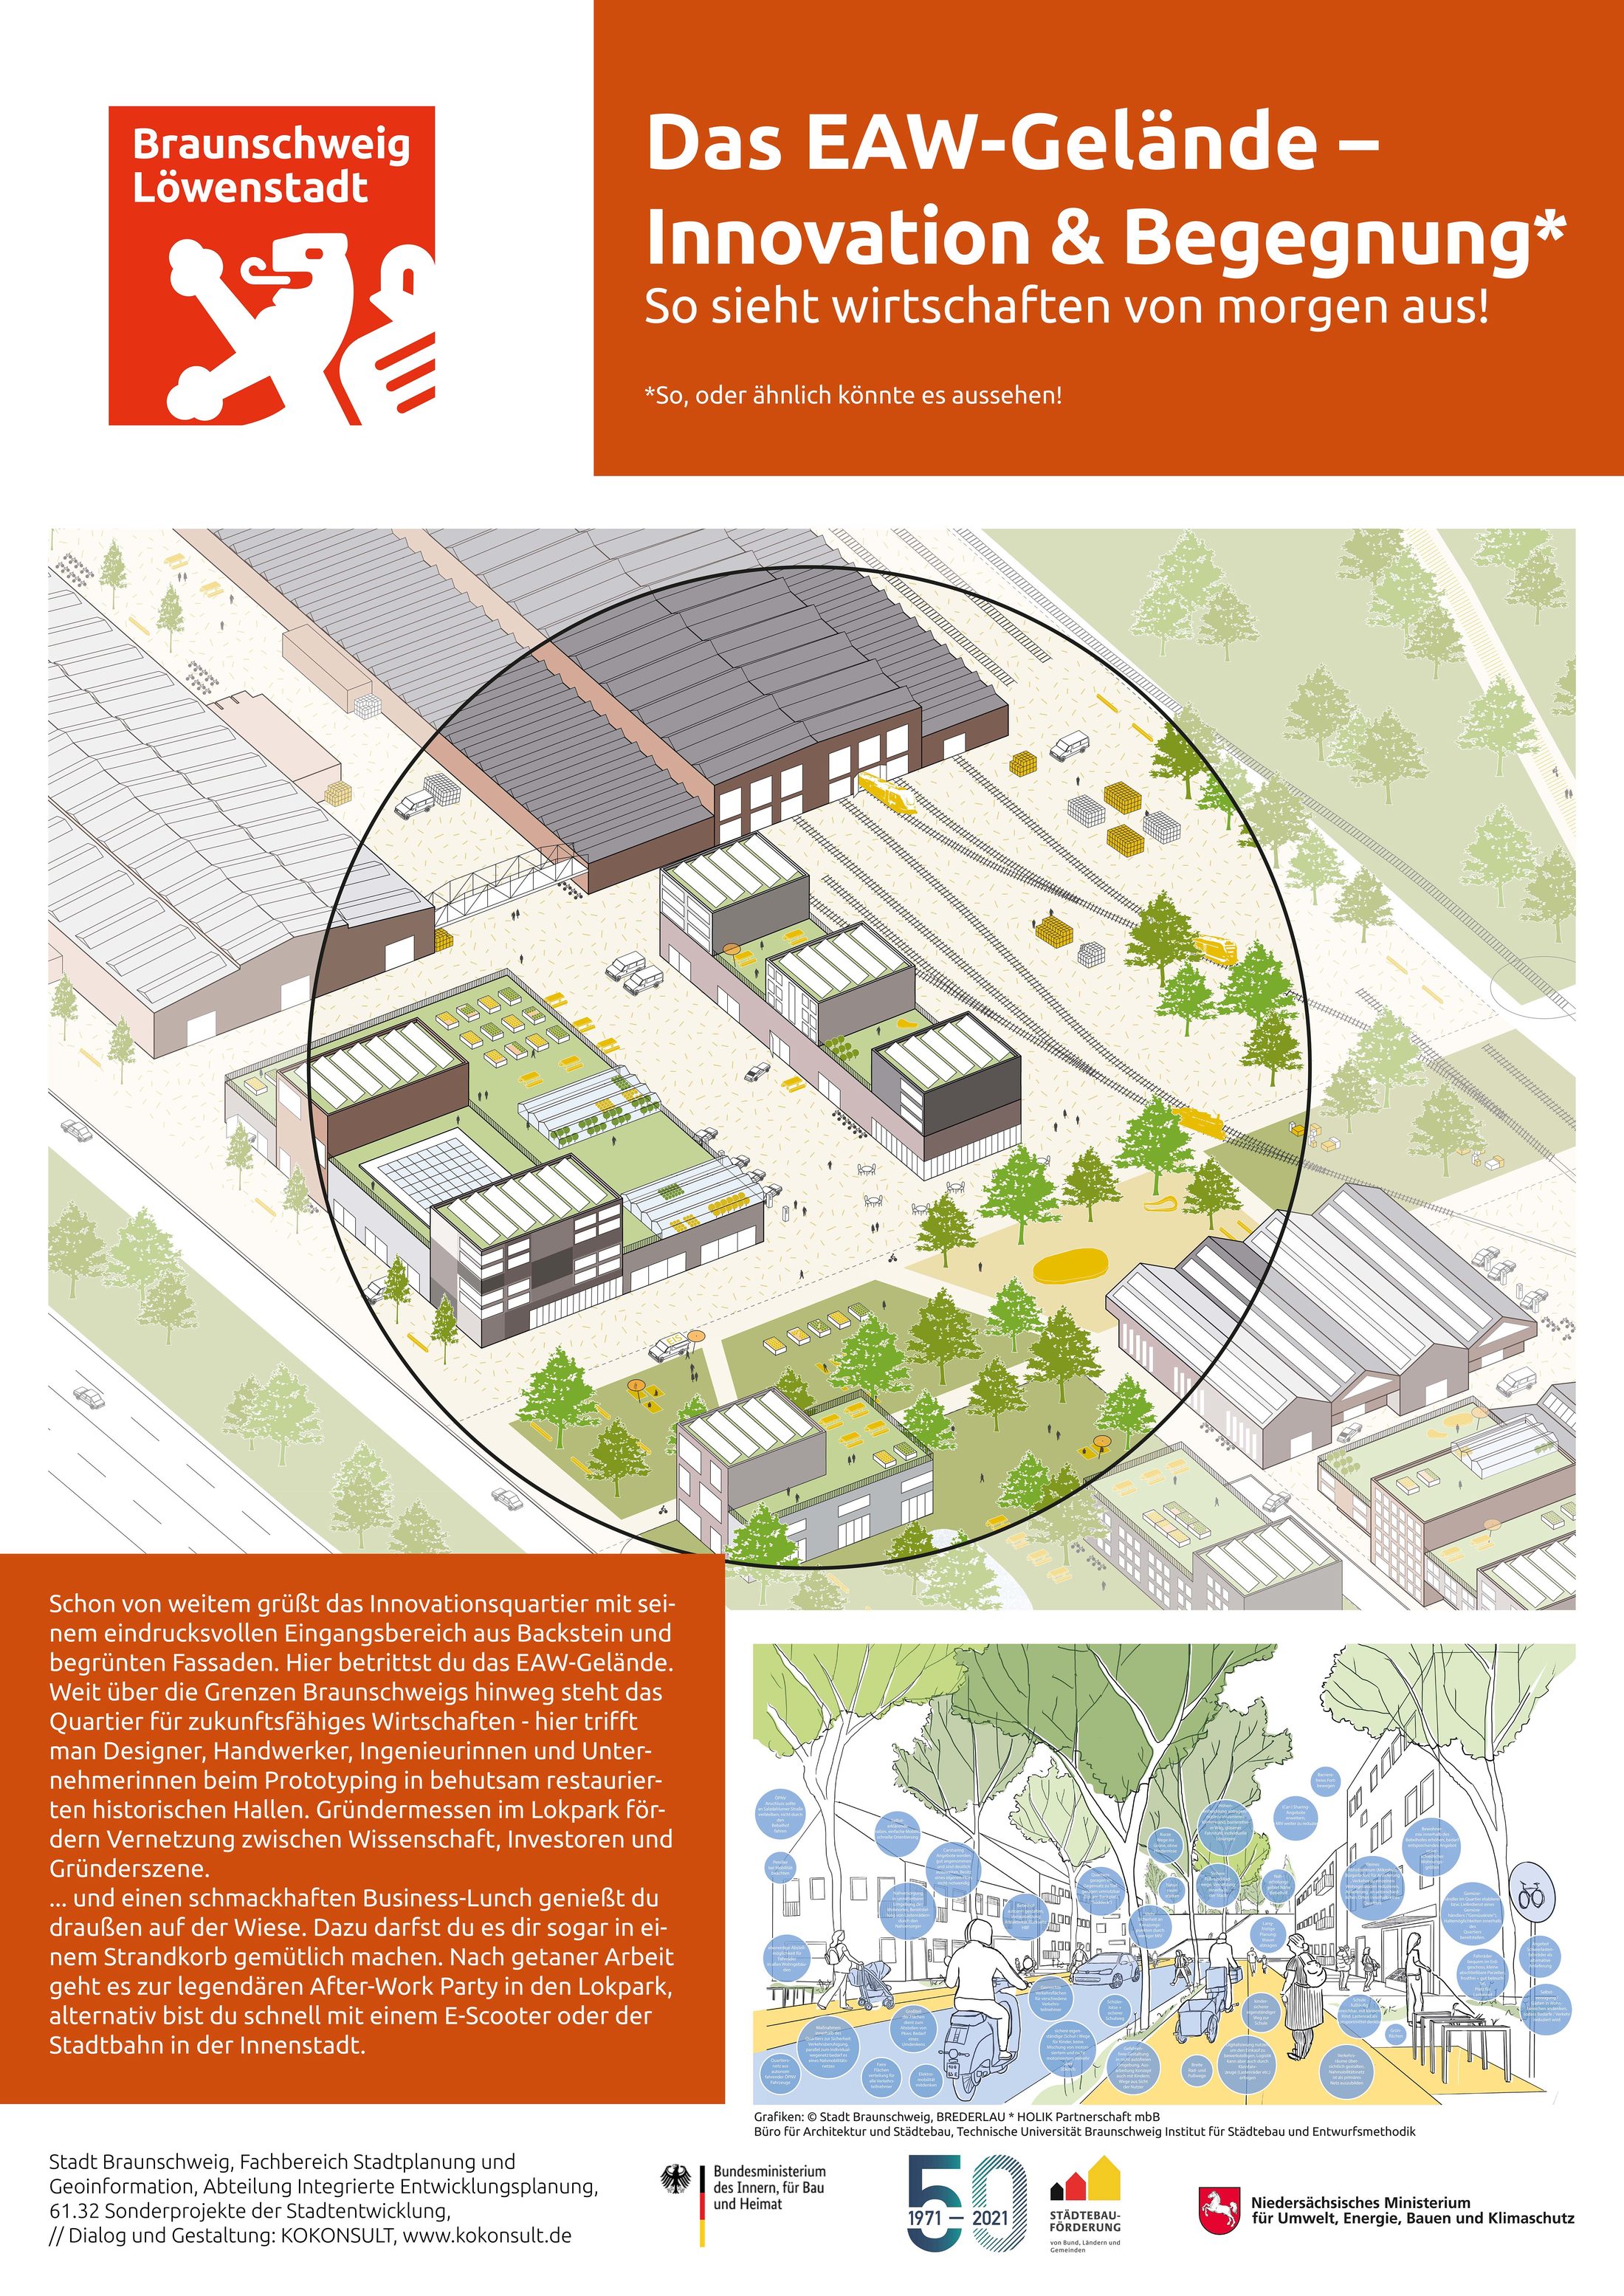 Plakat "Das EAW-Gelände - Innovation & Begegnung - So sieht wirtschaften von morgen aus!" (Wird bei Klick vergrößert)